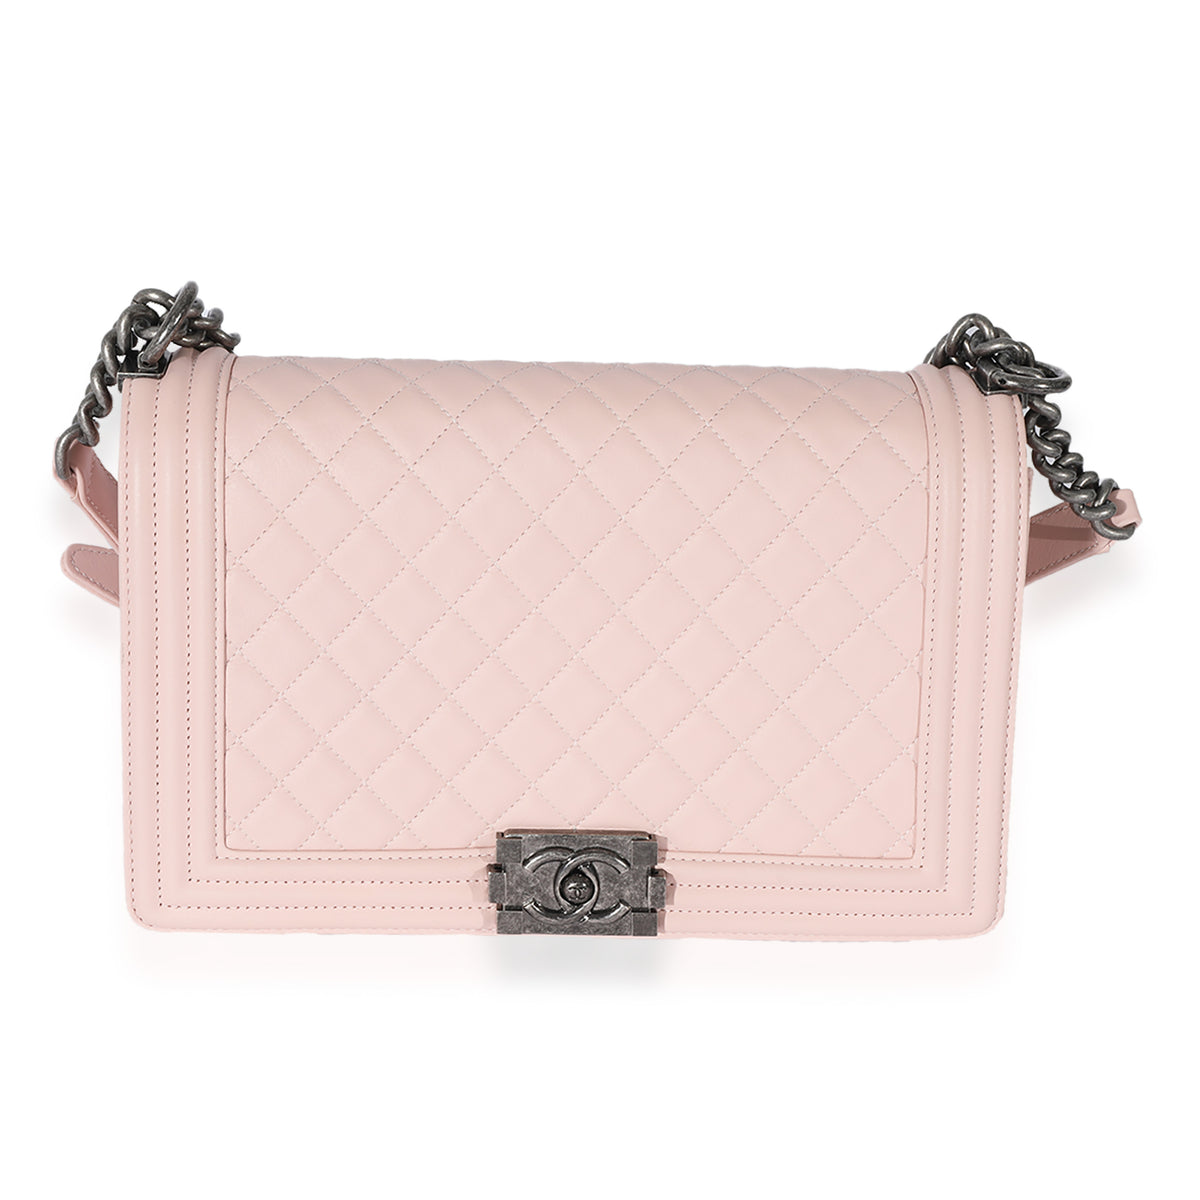 Chanel Light Pink Quilted Calfskin Medium Boy Bag